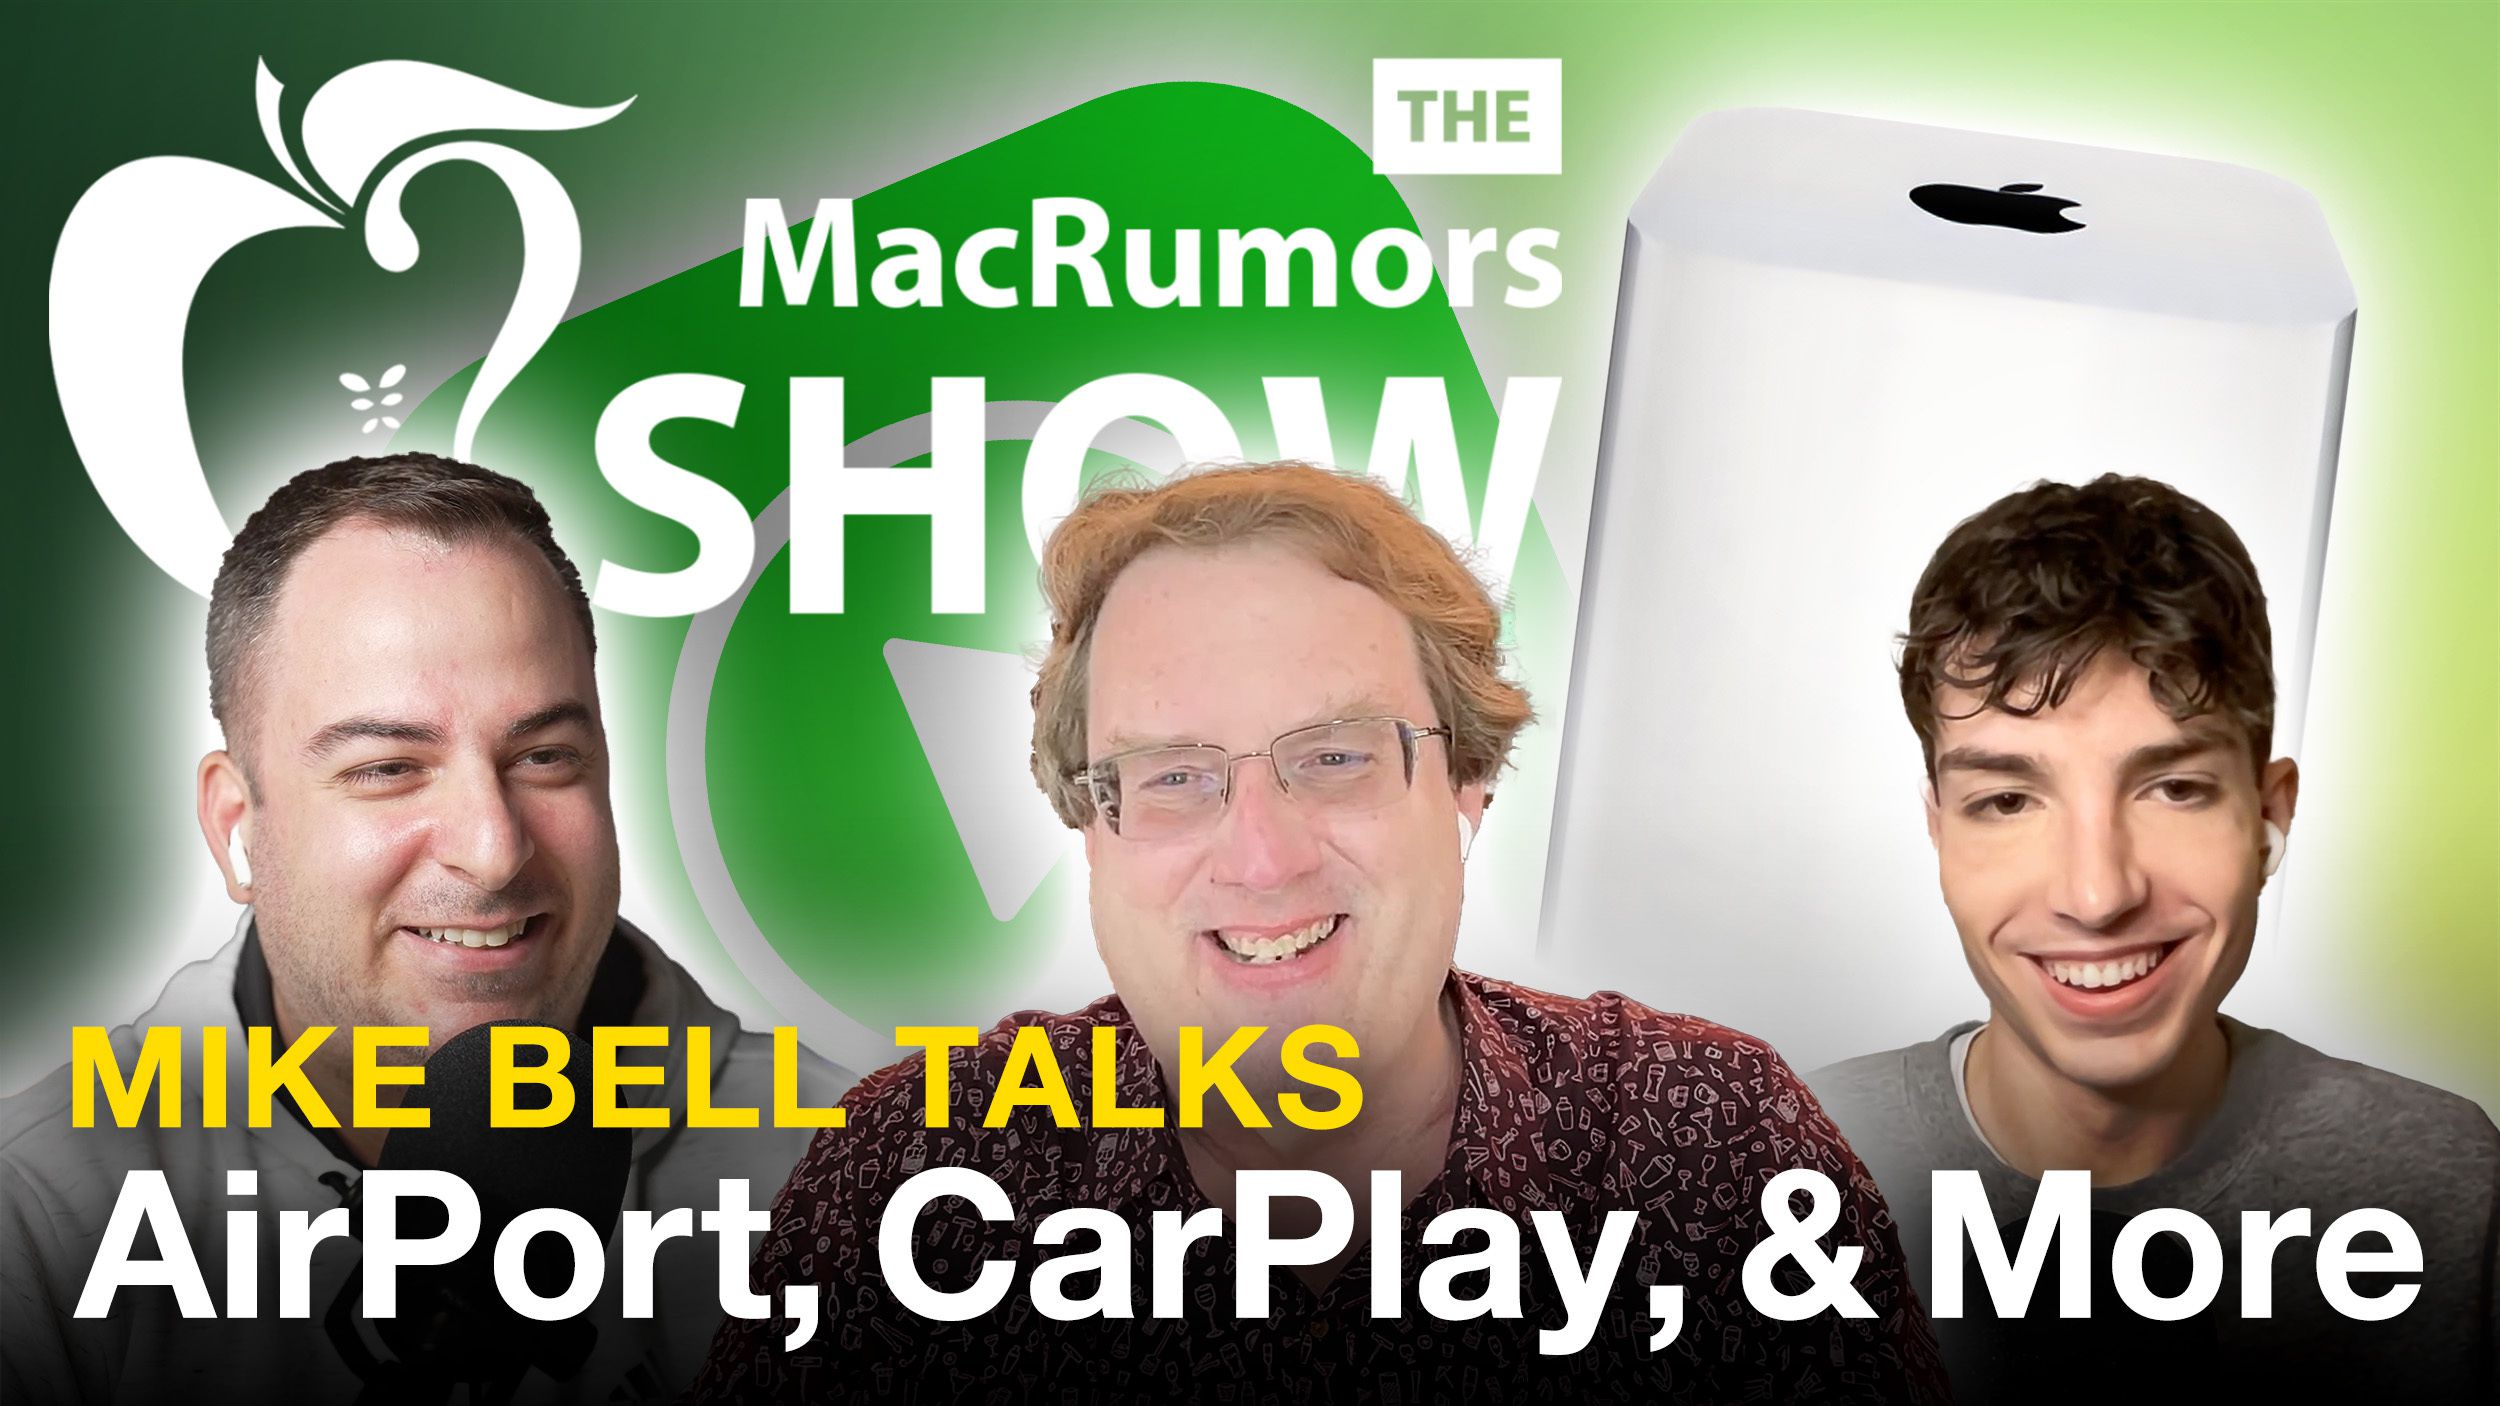 نمایش MacRumors: مایک بل، مدیر اجرایی سابق اپل درباره AirPort، CarPlay و موارد دیگر صحبت می کند.